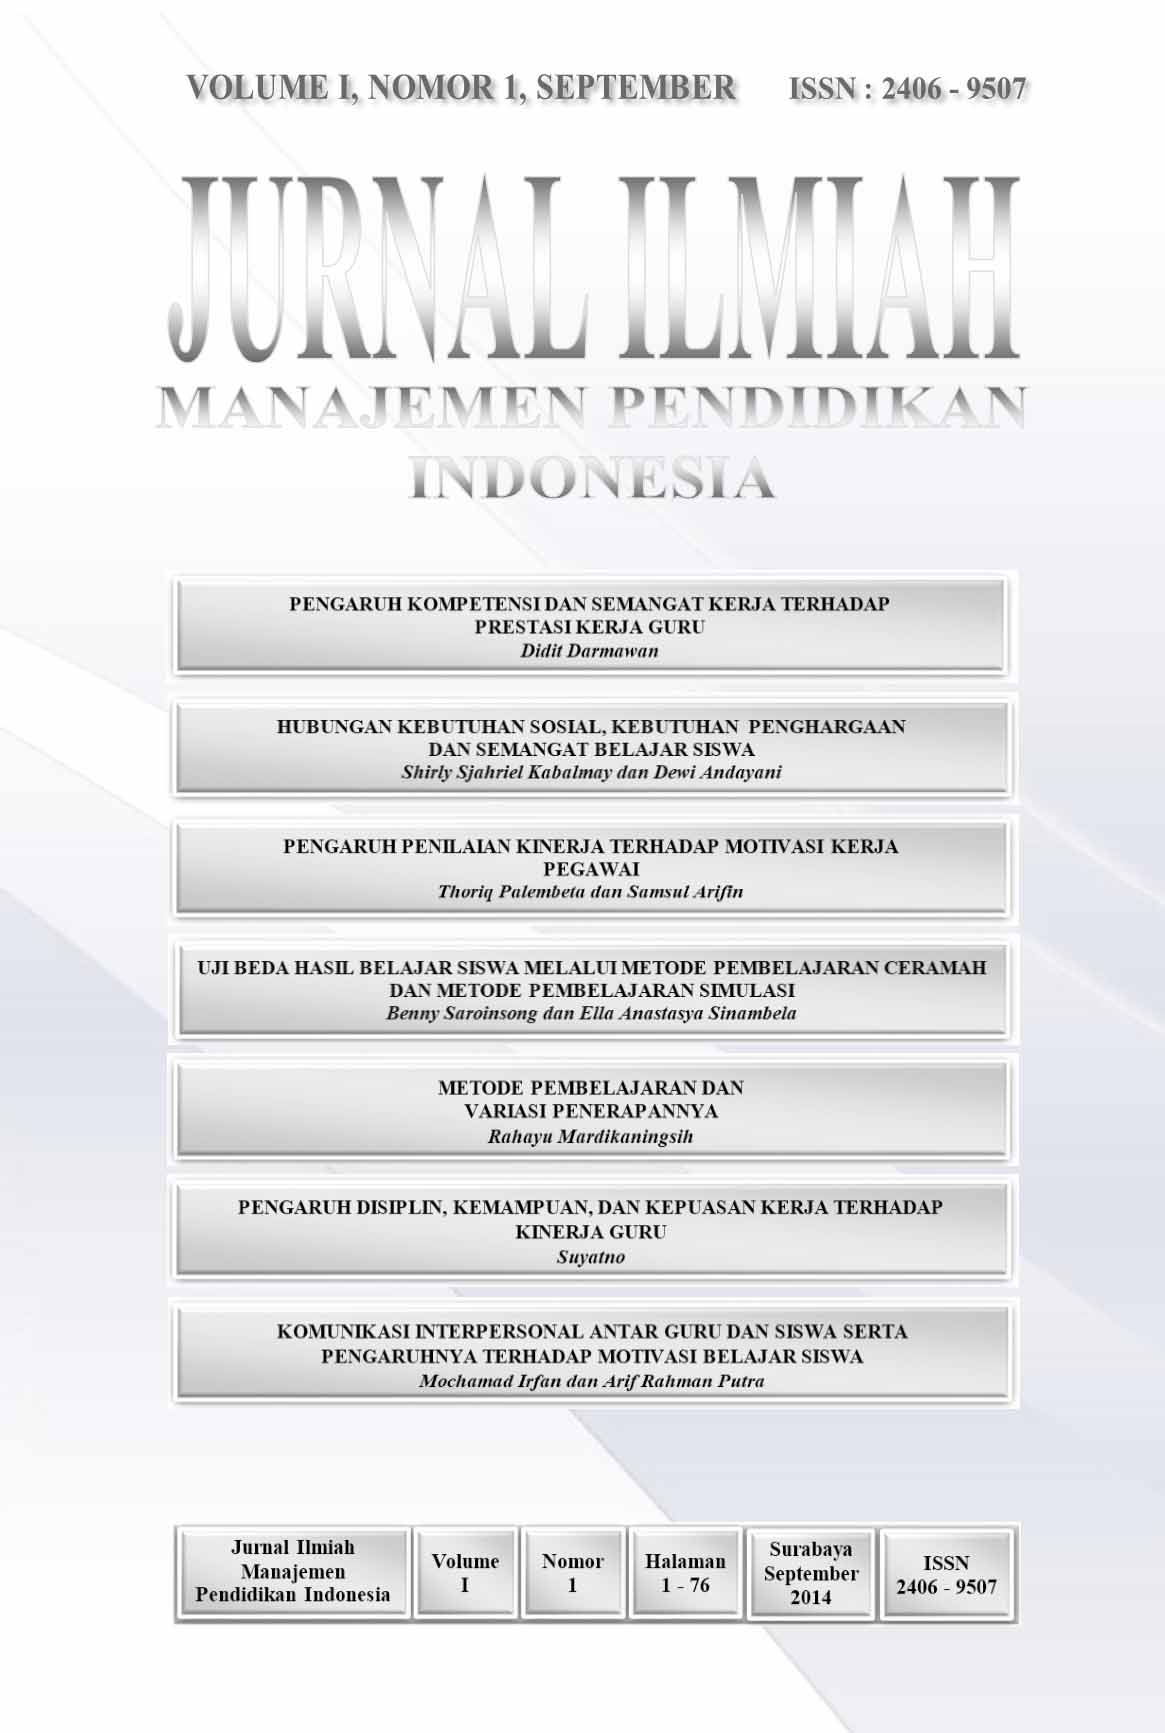 Jurnal Ilmiah Manajemen Pendidikan Vol 1 September 2014